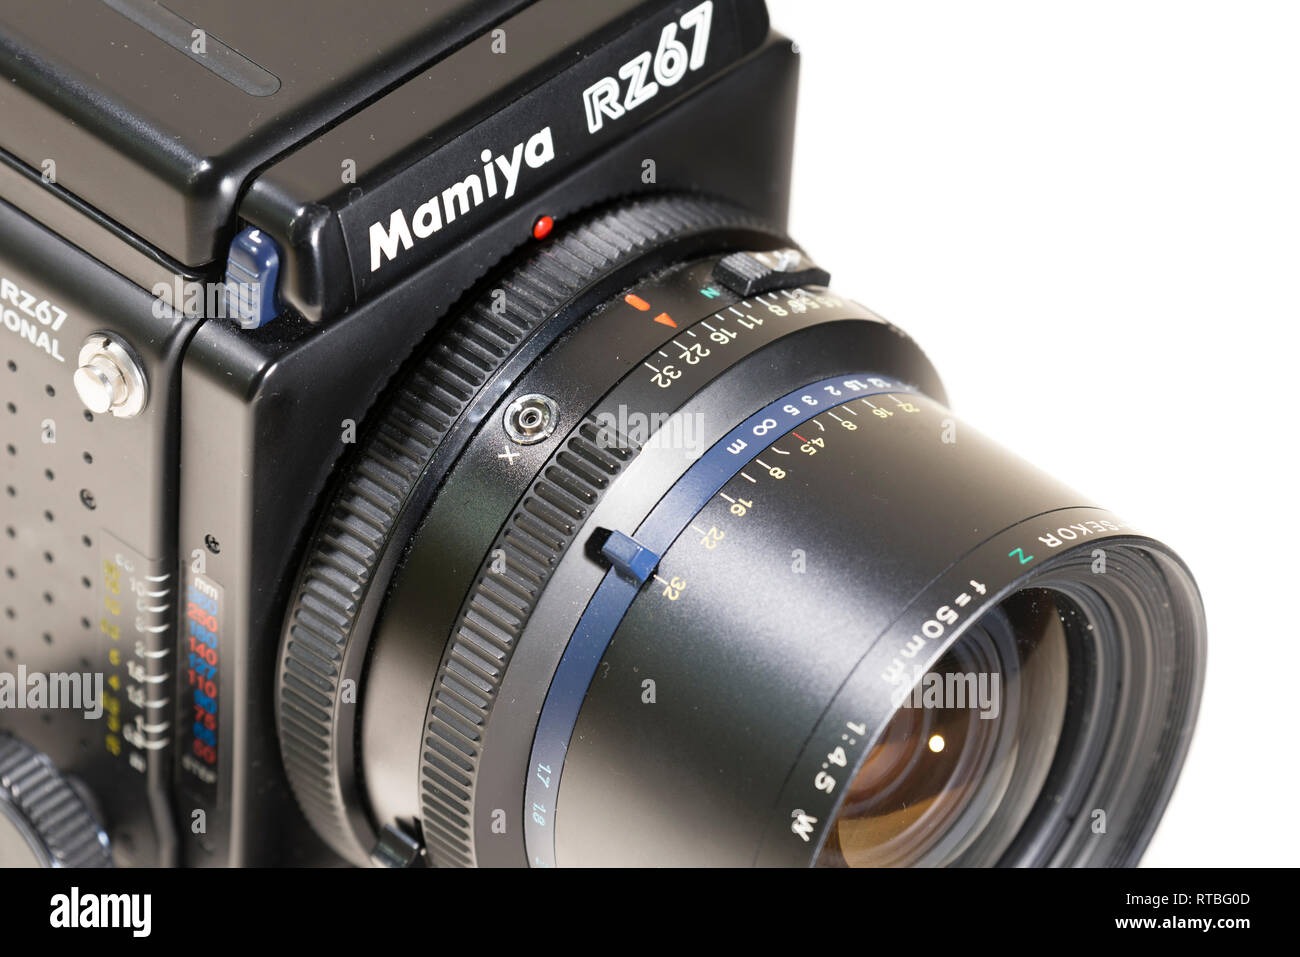 Mamiya RZ67, medium format film camera Stock Photo